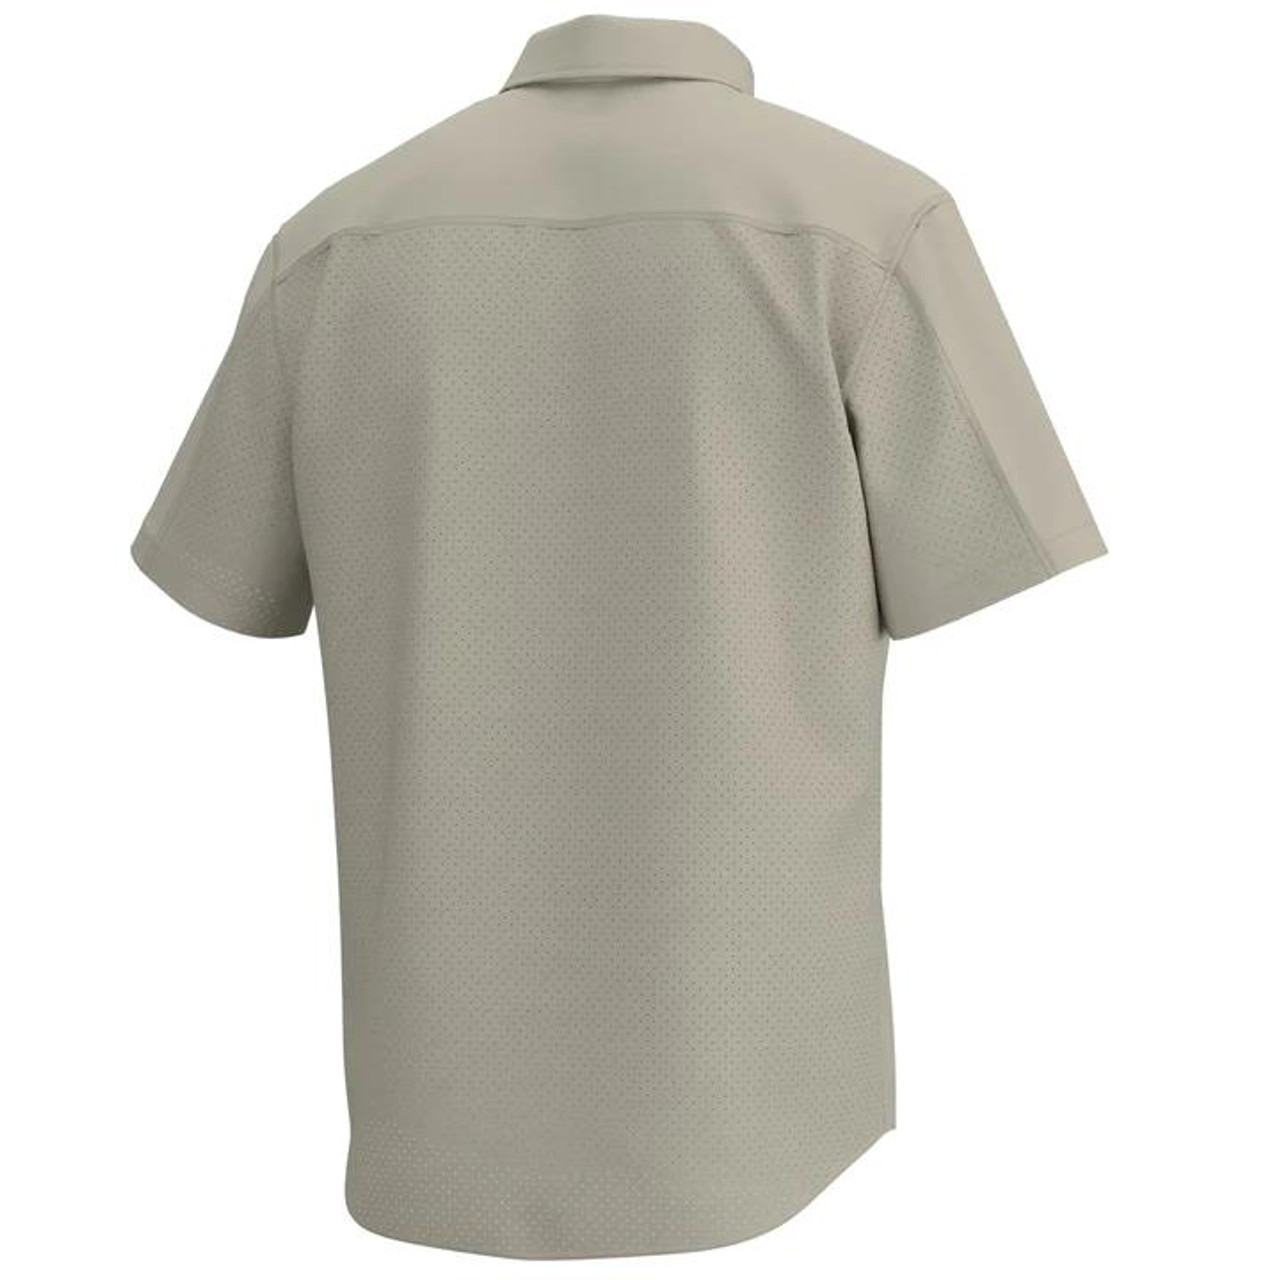 Huk Men's Tide Point Shirt - Short Sleeve - Khaki - Dance's